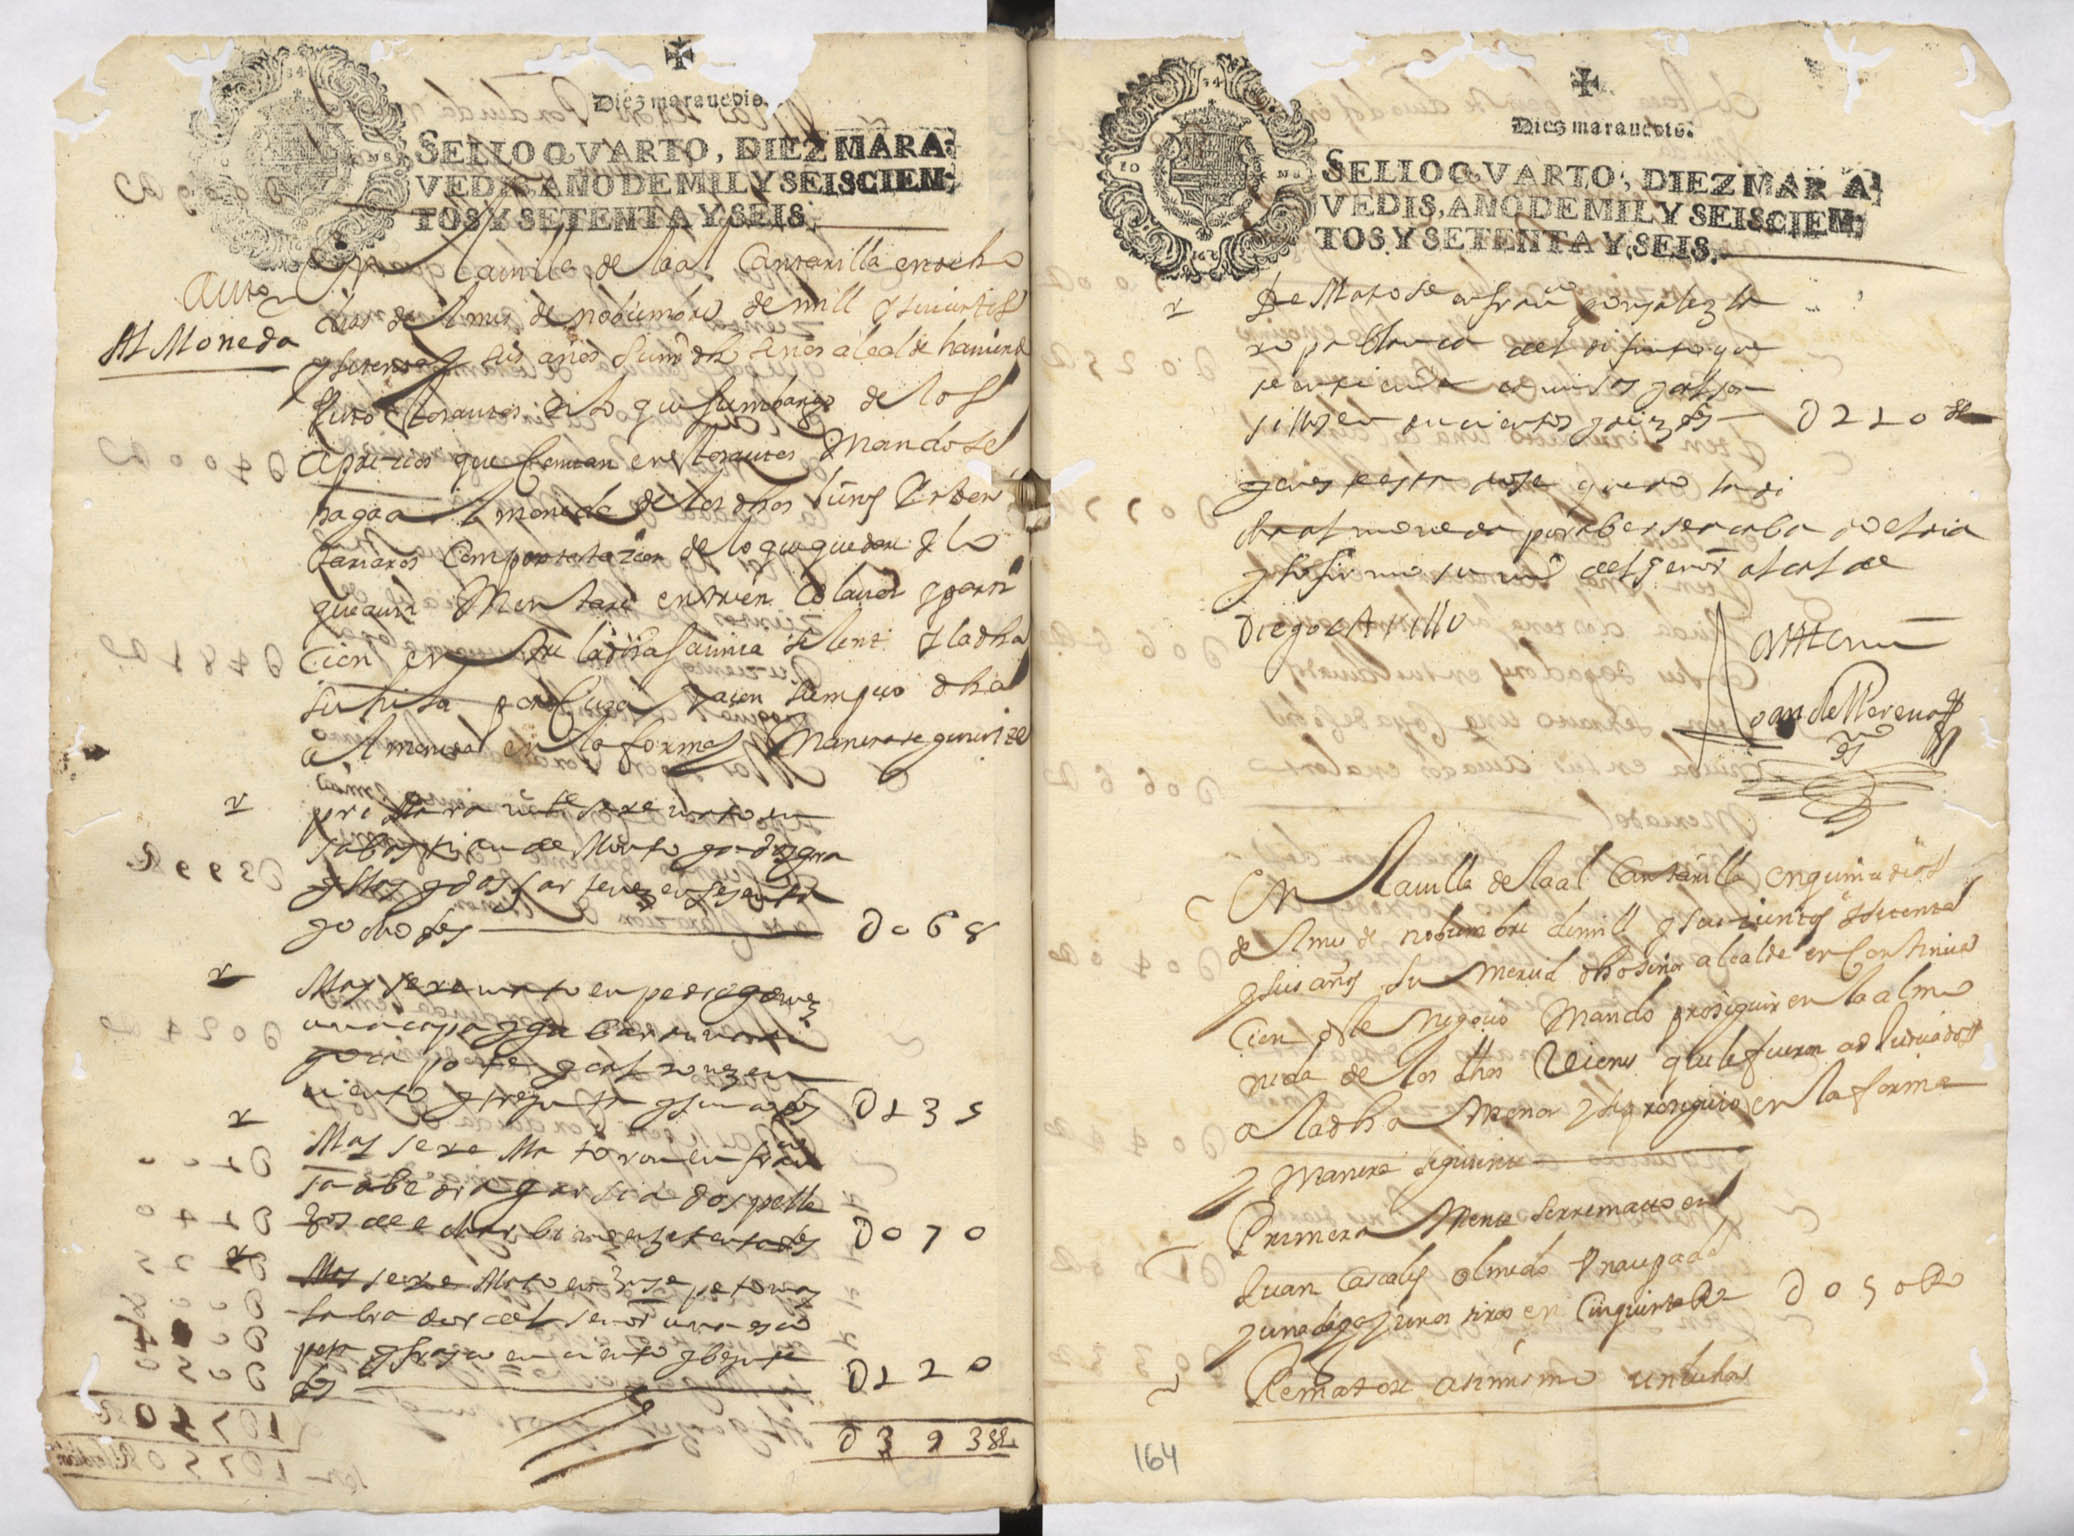 Registro de inventarios y particiones de bienes, Alcantarilla. Años 1601-1695.